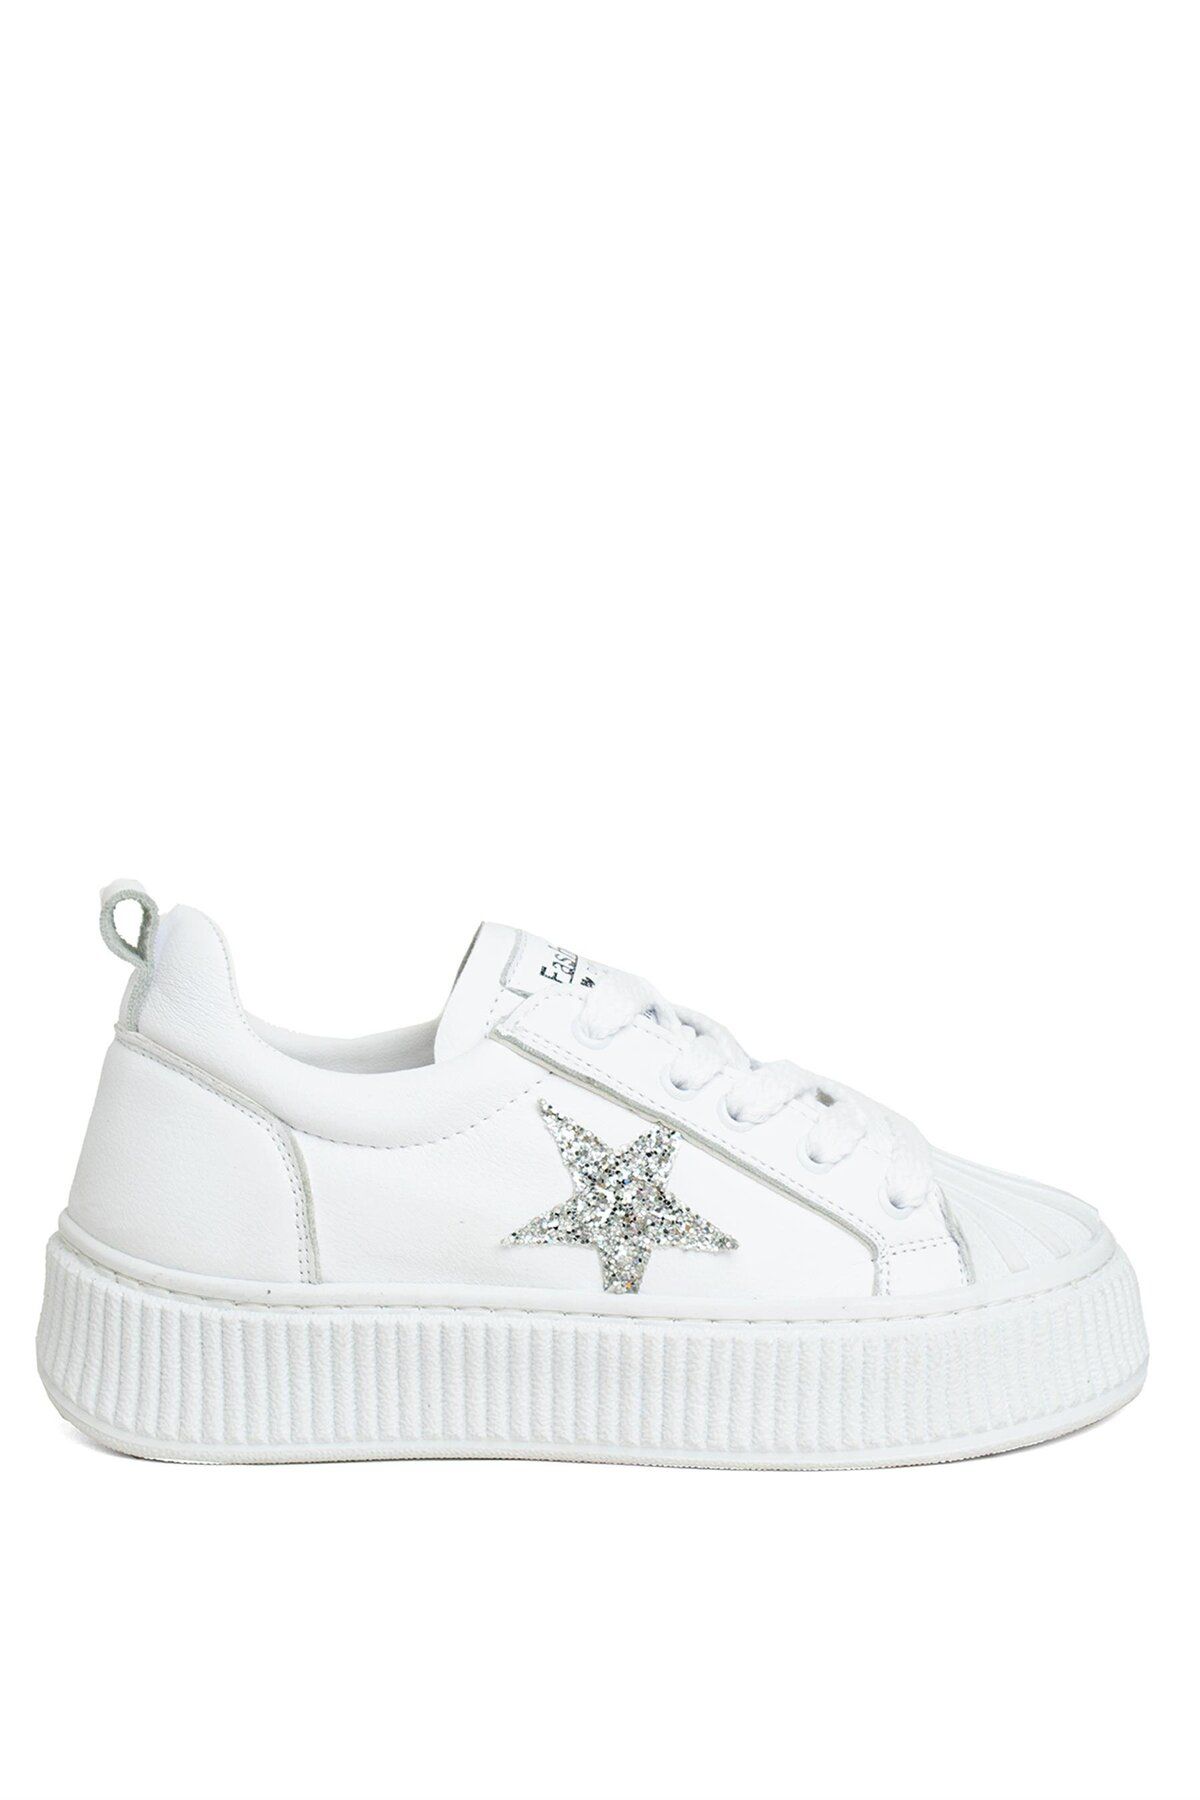 Ayakkabı Fuarı Elit BtnDVM01 Kadın Klasik Sneaker Beyaz